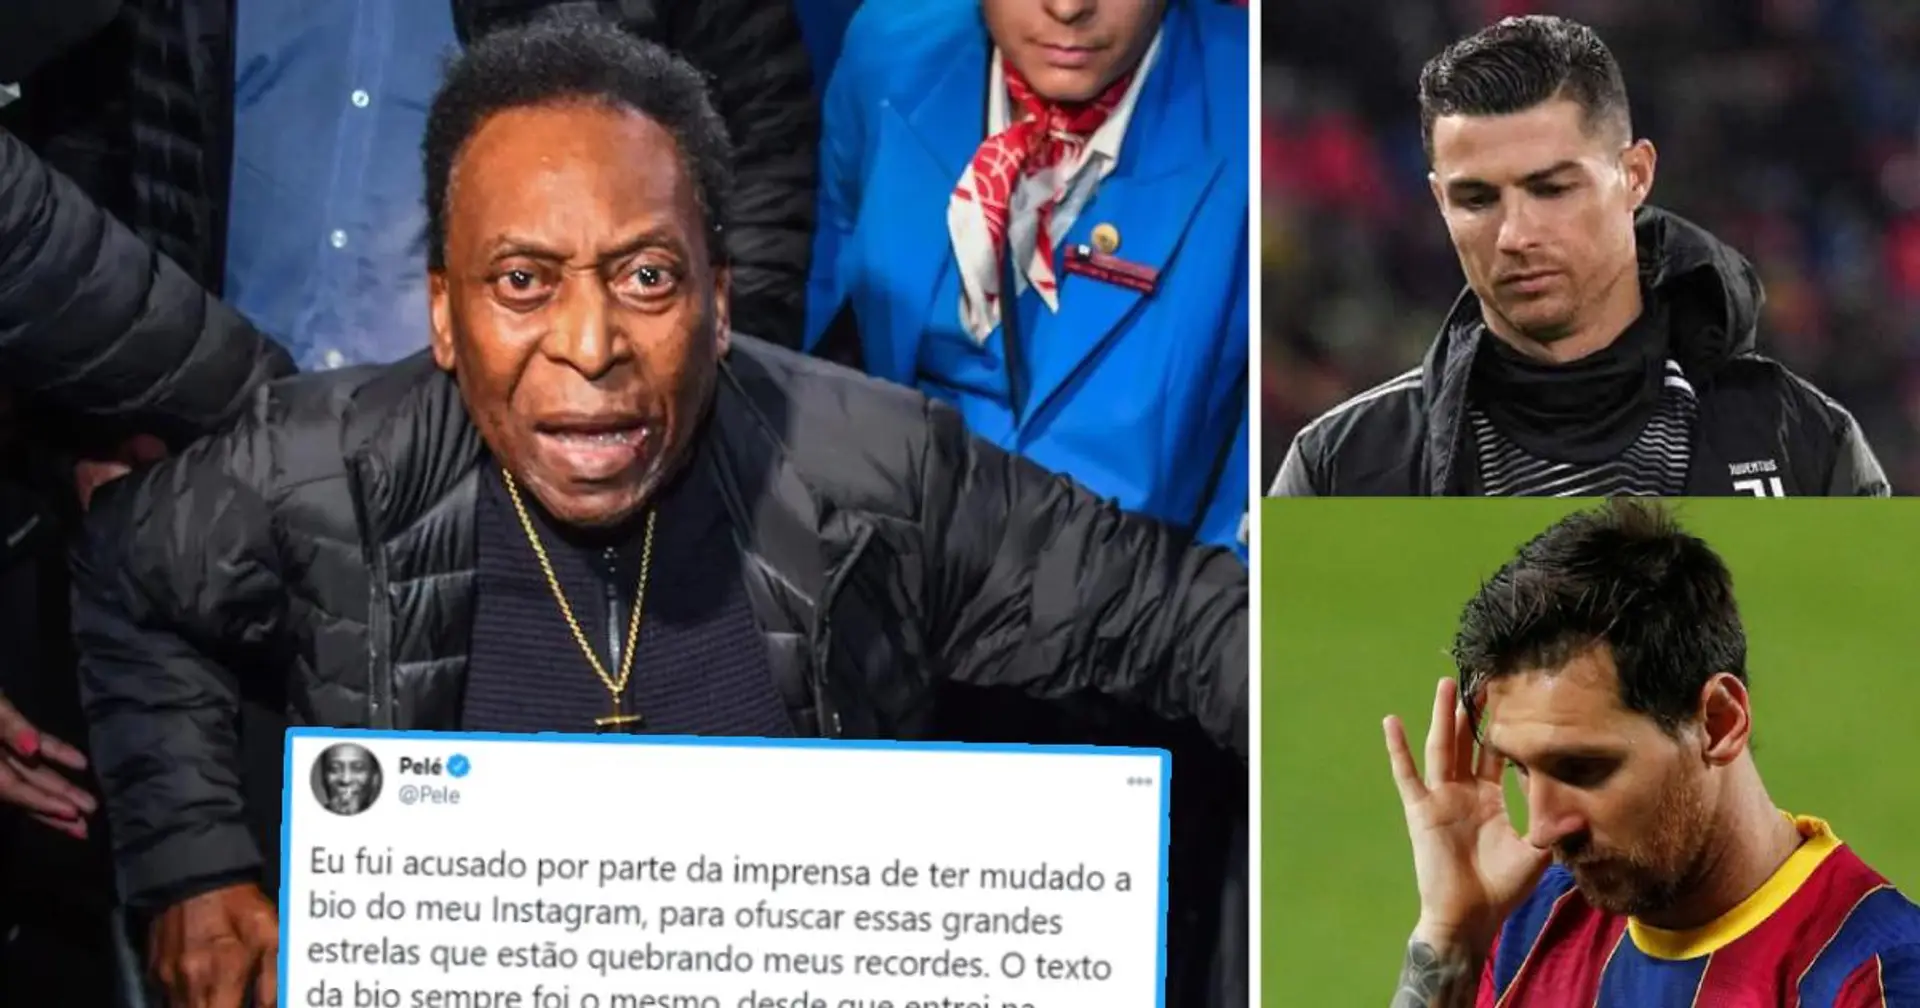 Pele reagiert auf die Anschuldigungen, die Instagram-Bio geändert zu haben, um Messi und Ronaldo zu ärgern